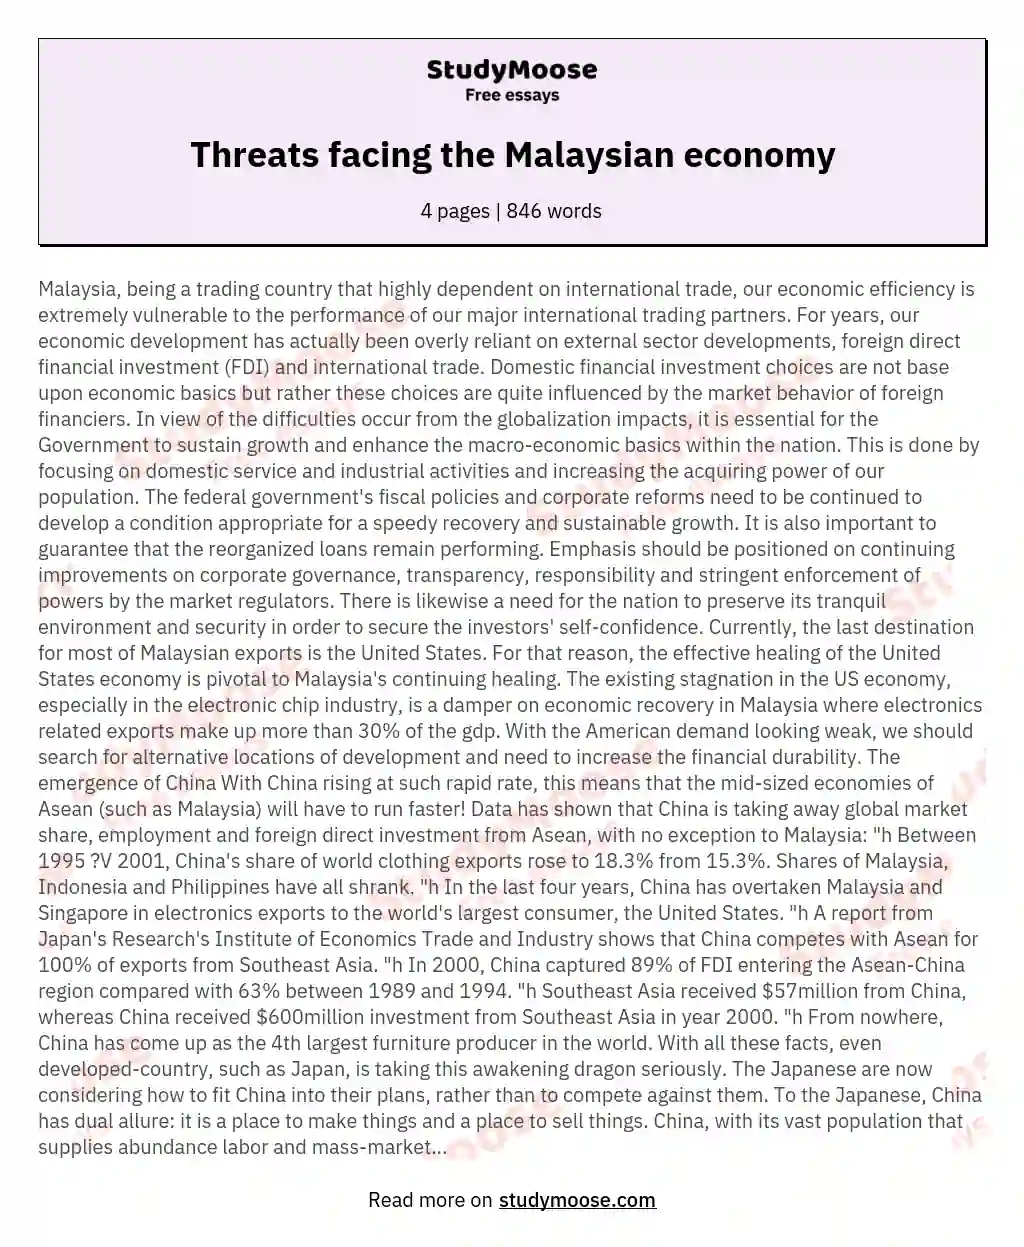 Threats facing the Malaysian economy